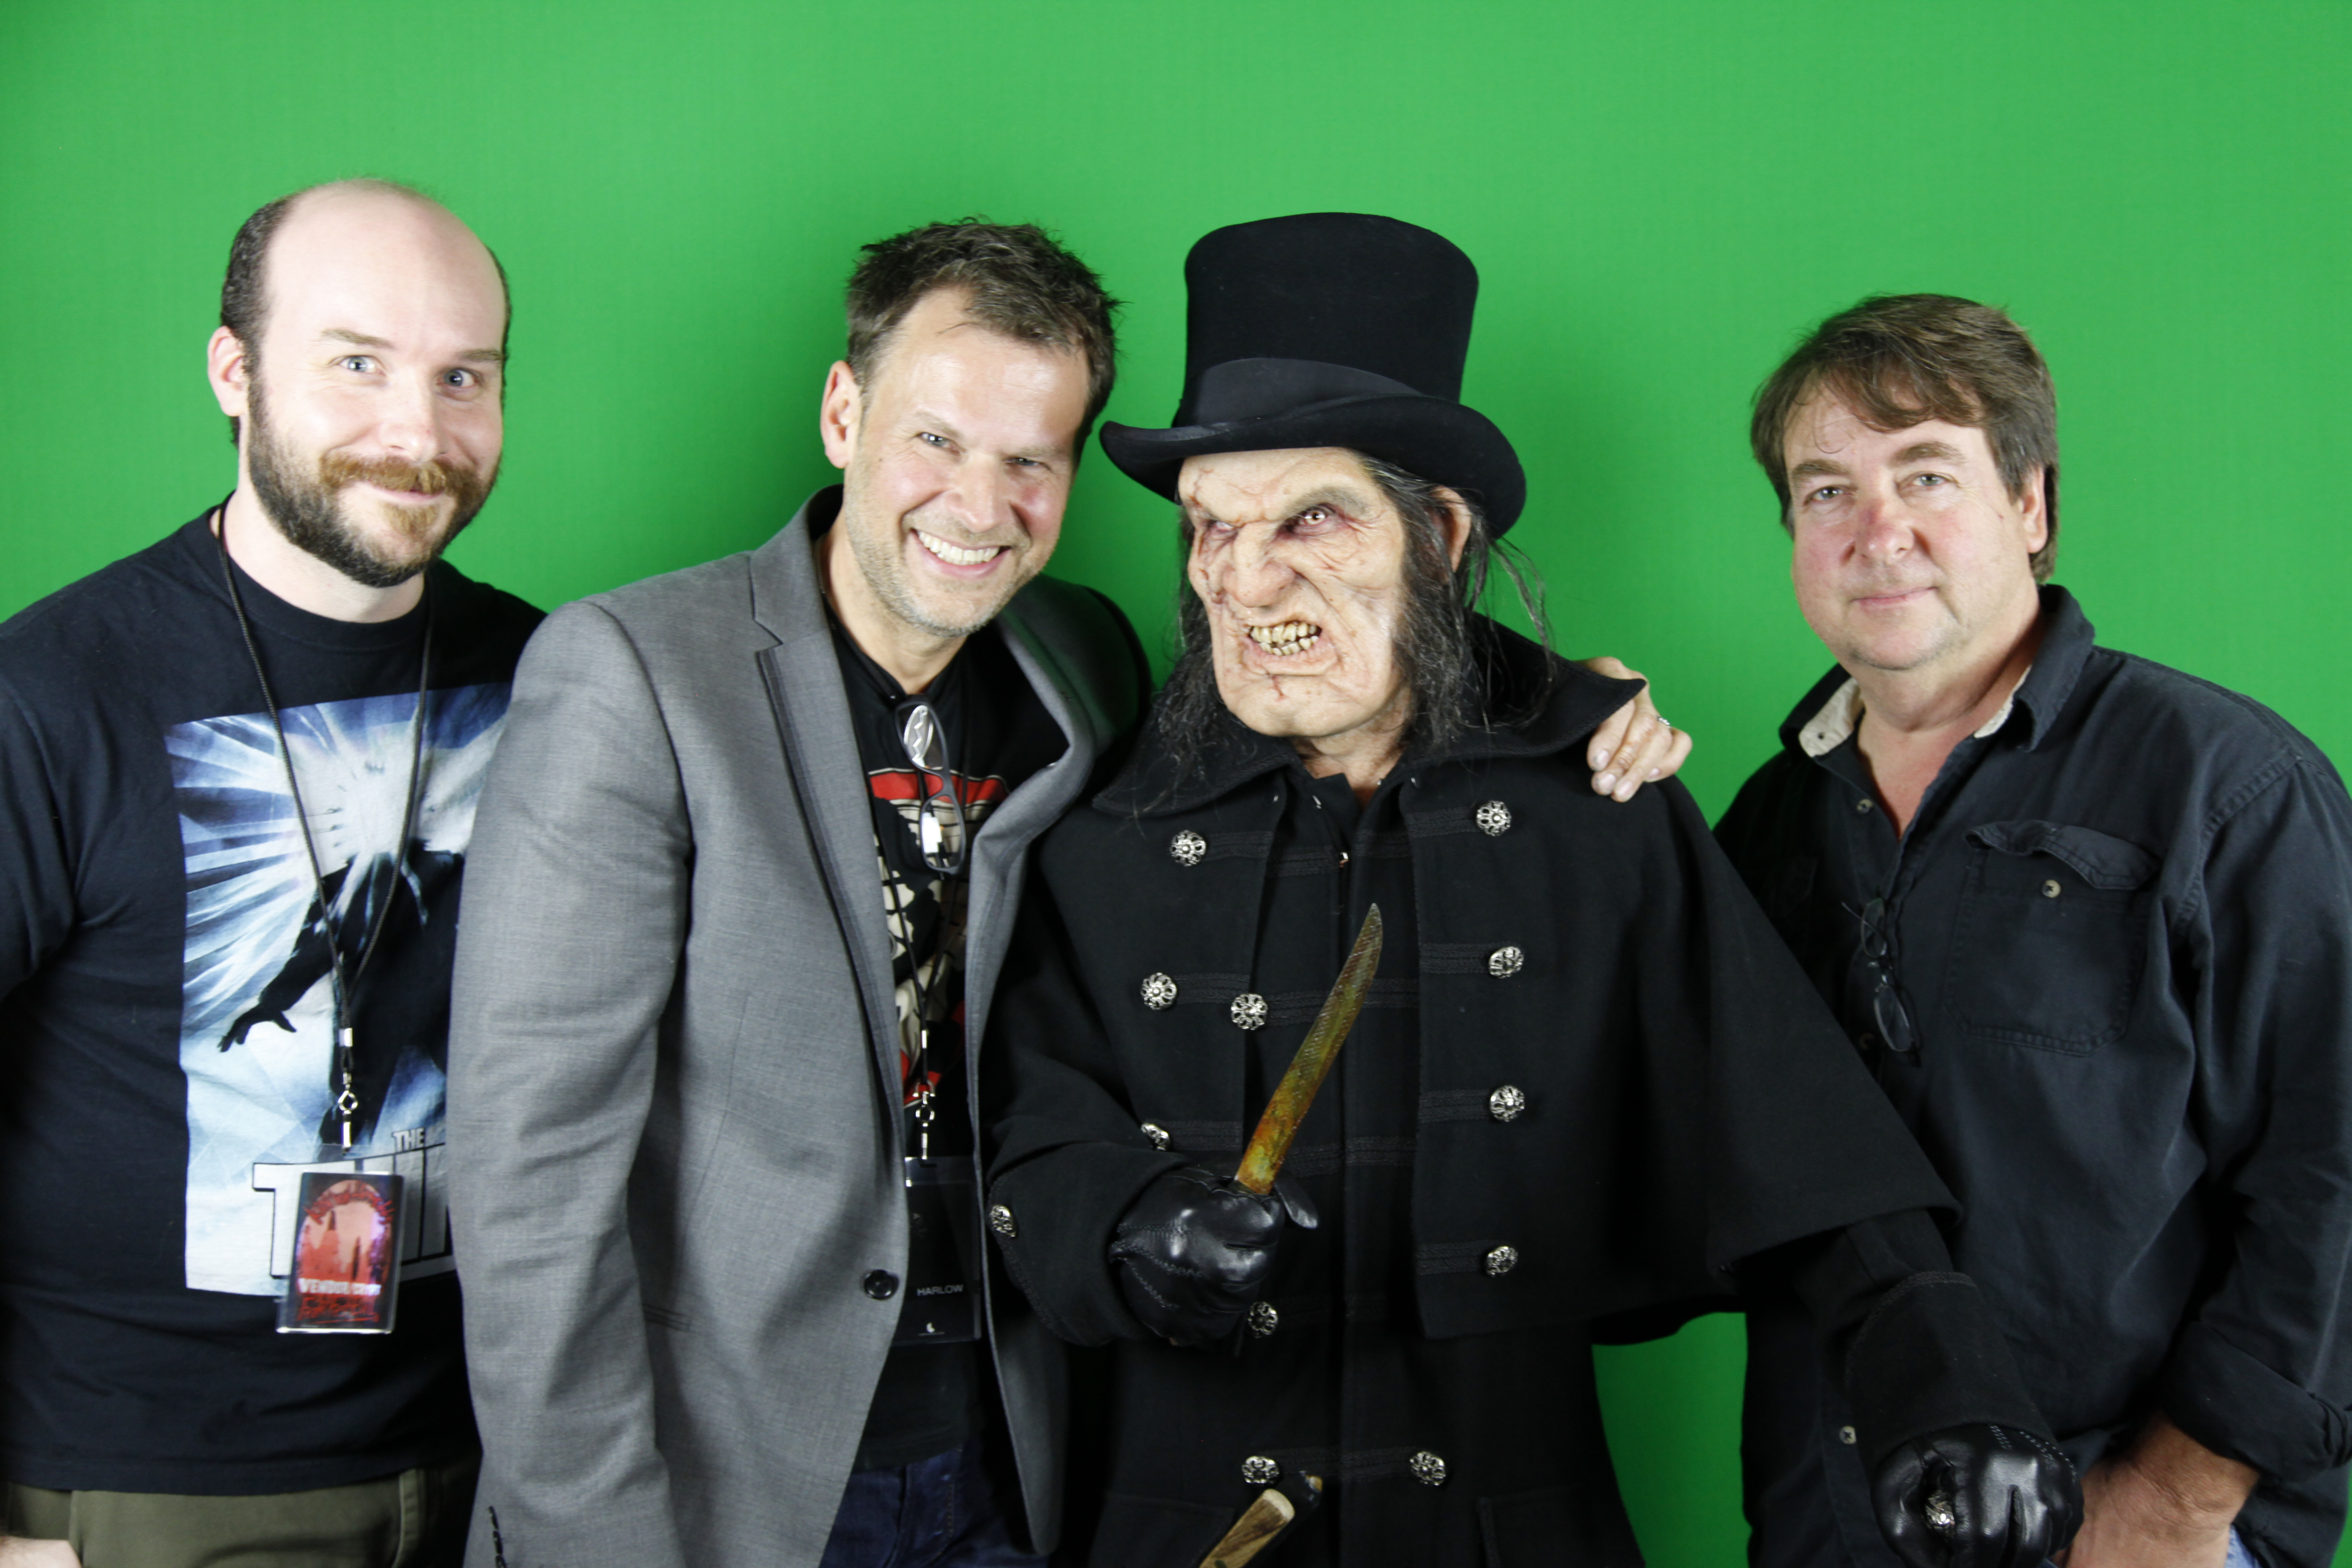 LtR: Jack Bennett, Joel Harlow, Scott Ian (in Jack the Ripper makeup) and Steve Buscaino at Kirk Von Hammett's Fear FestEVIL